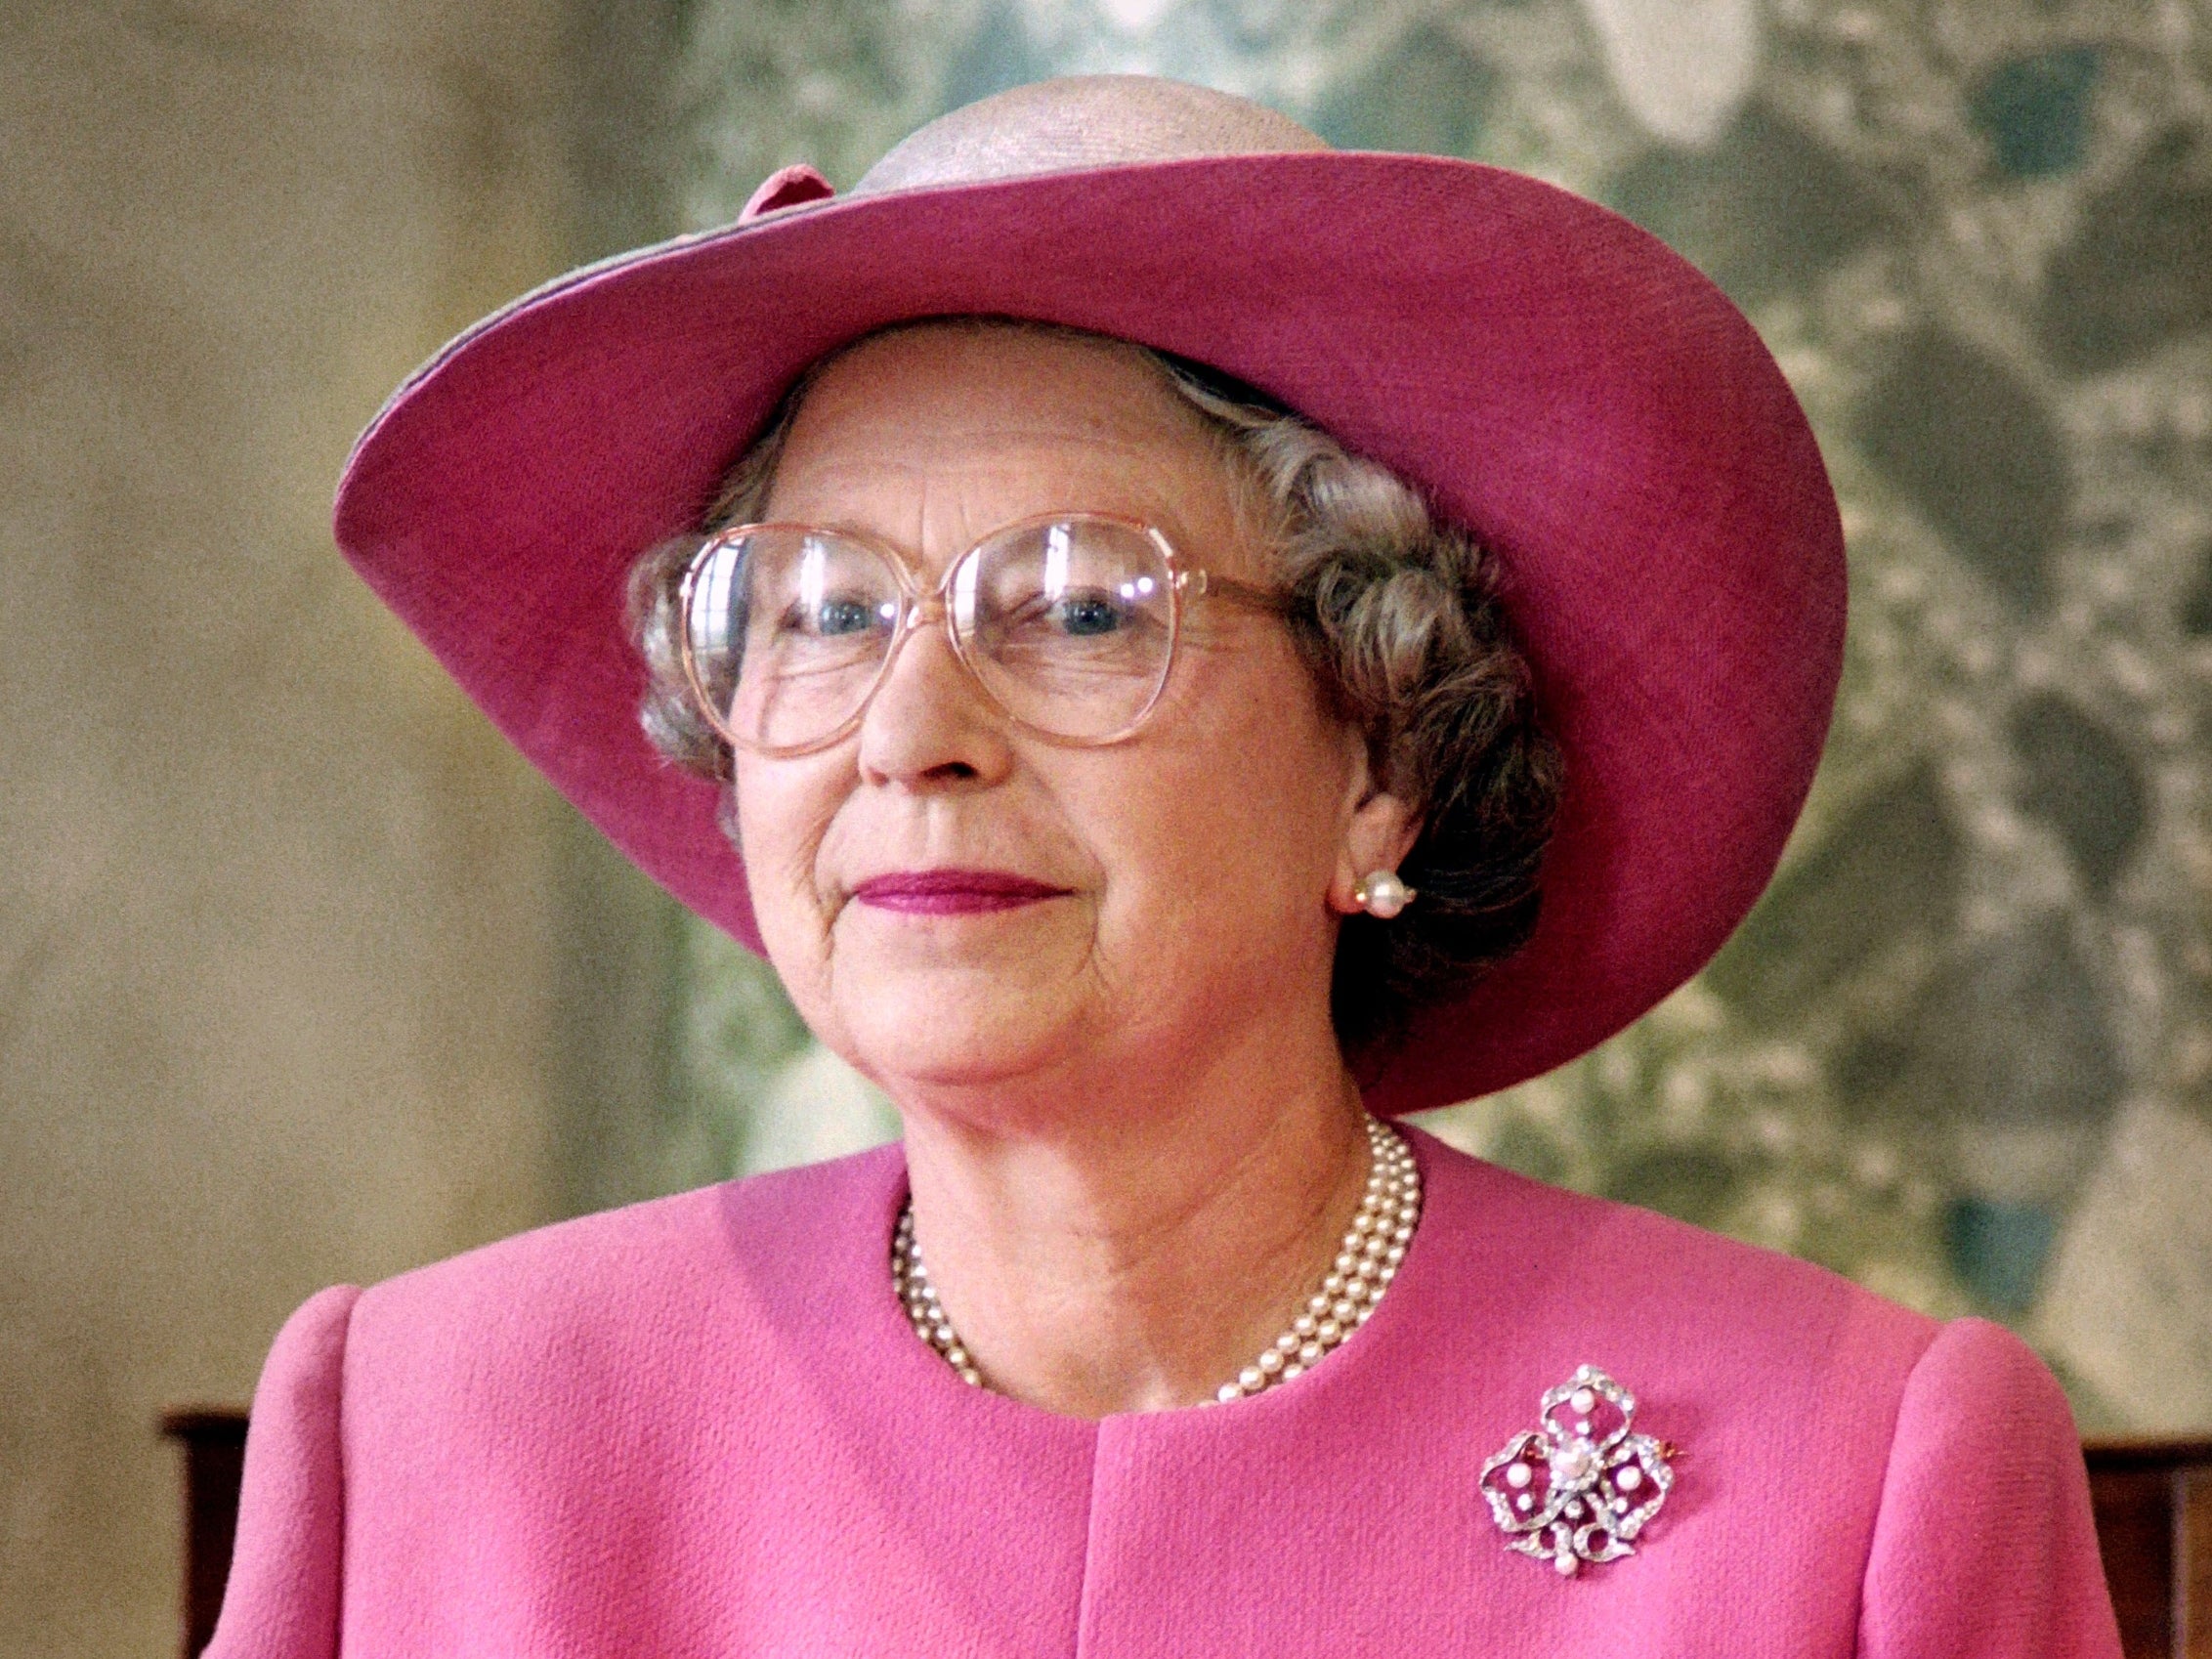 Queen Elizabeth II in 1992